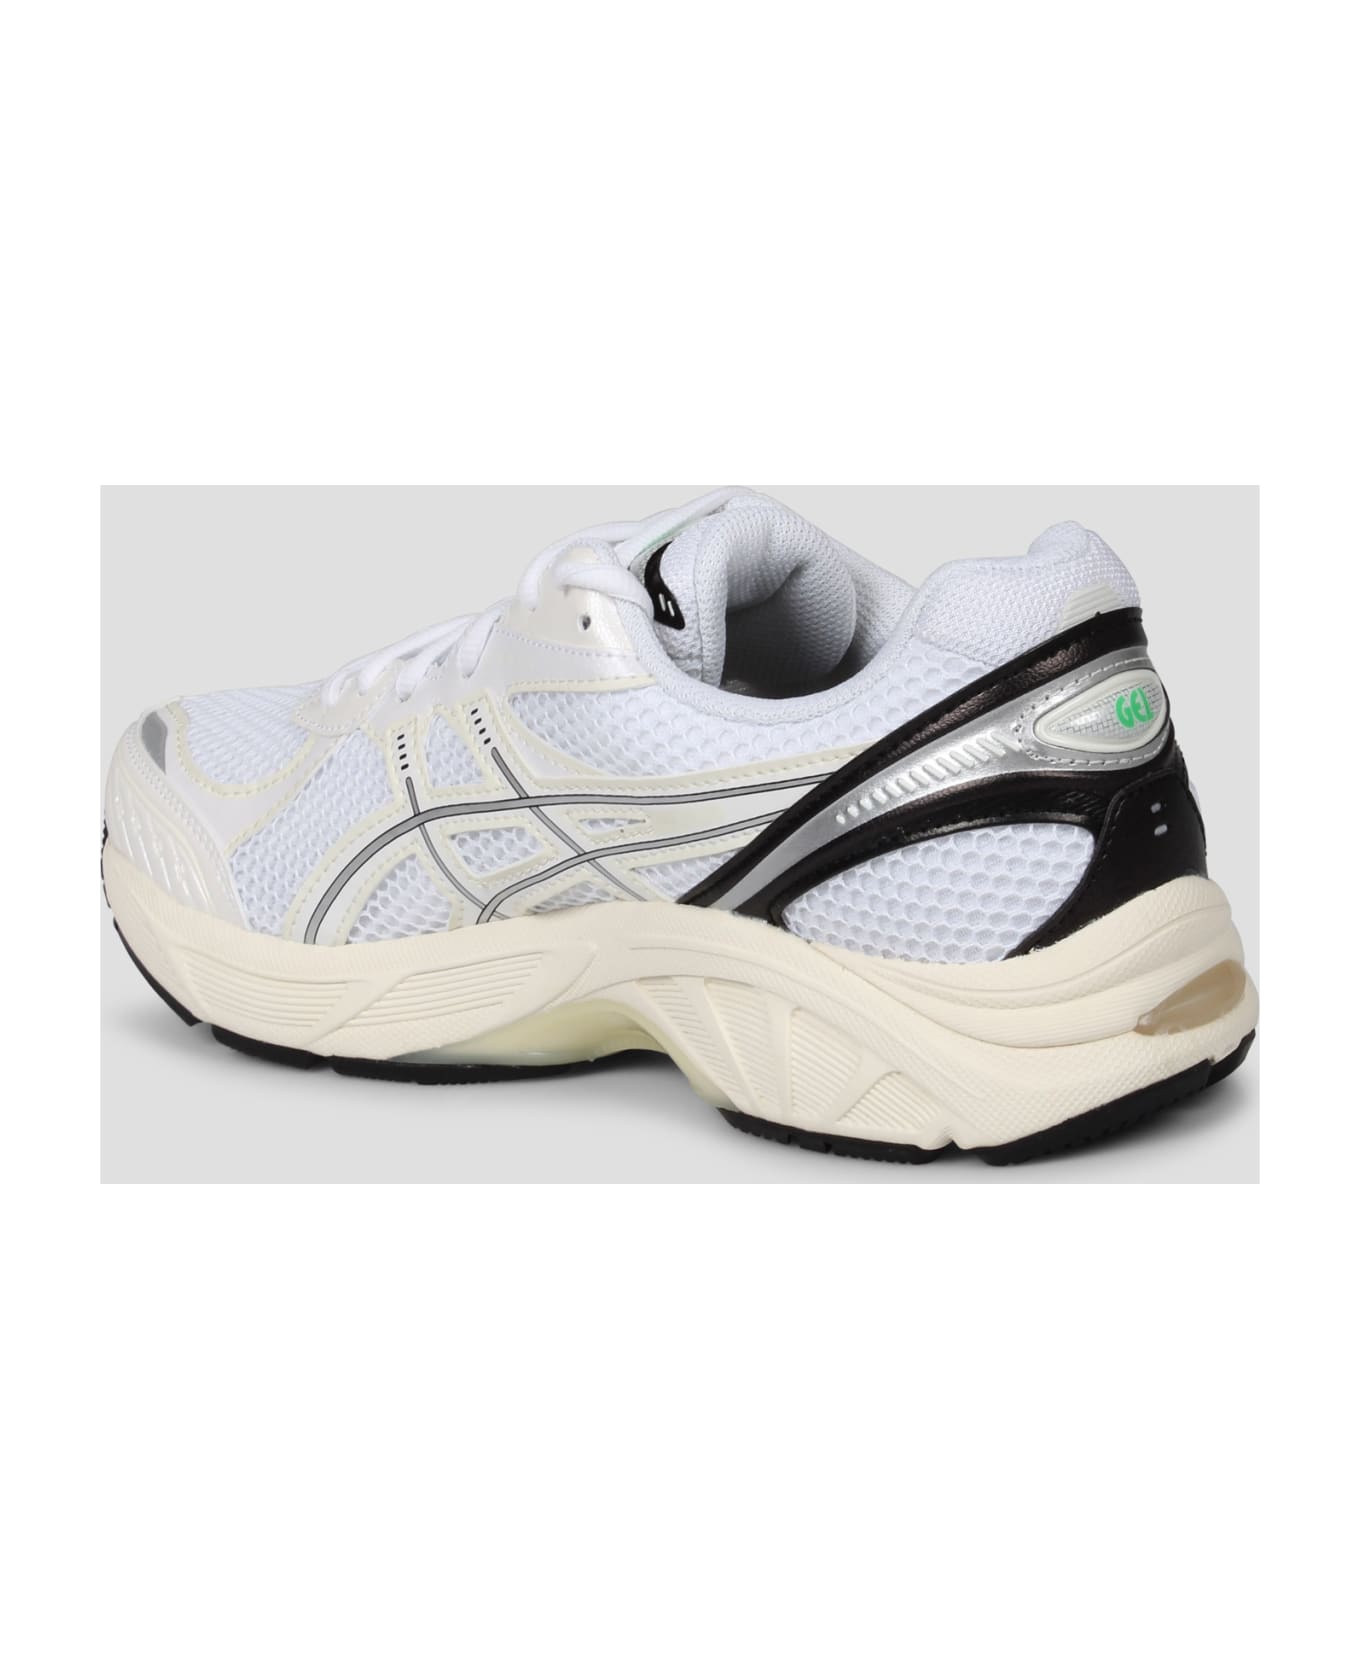 Asics Gt 2160 Sneakers - White スニーカー